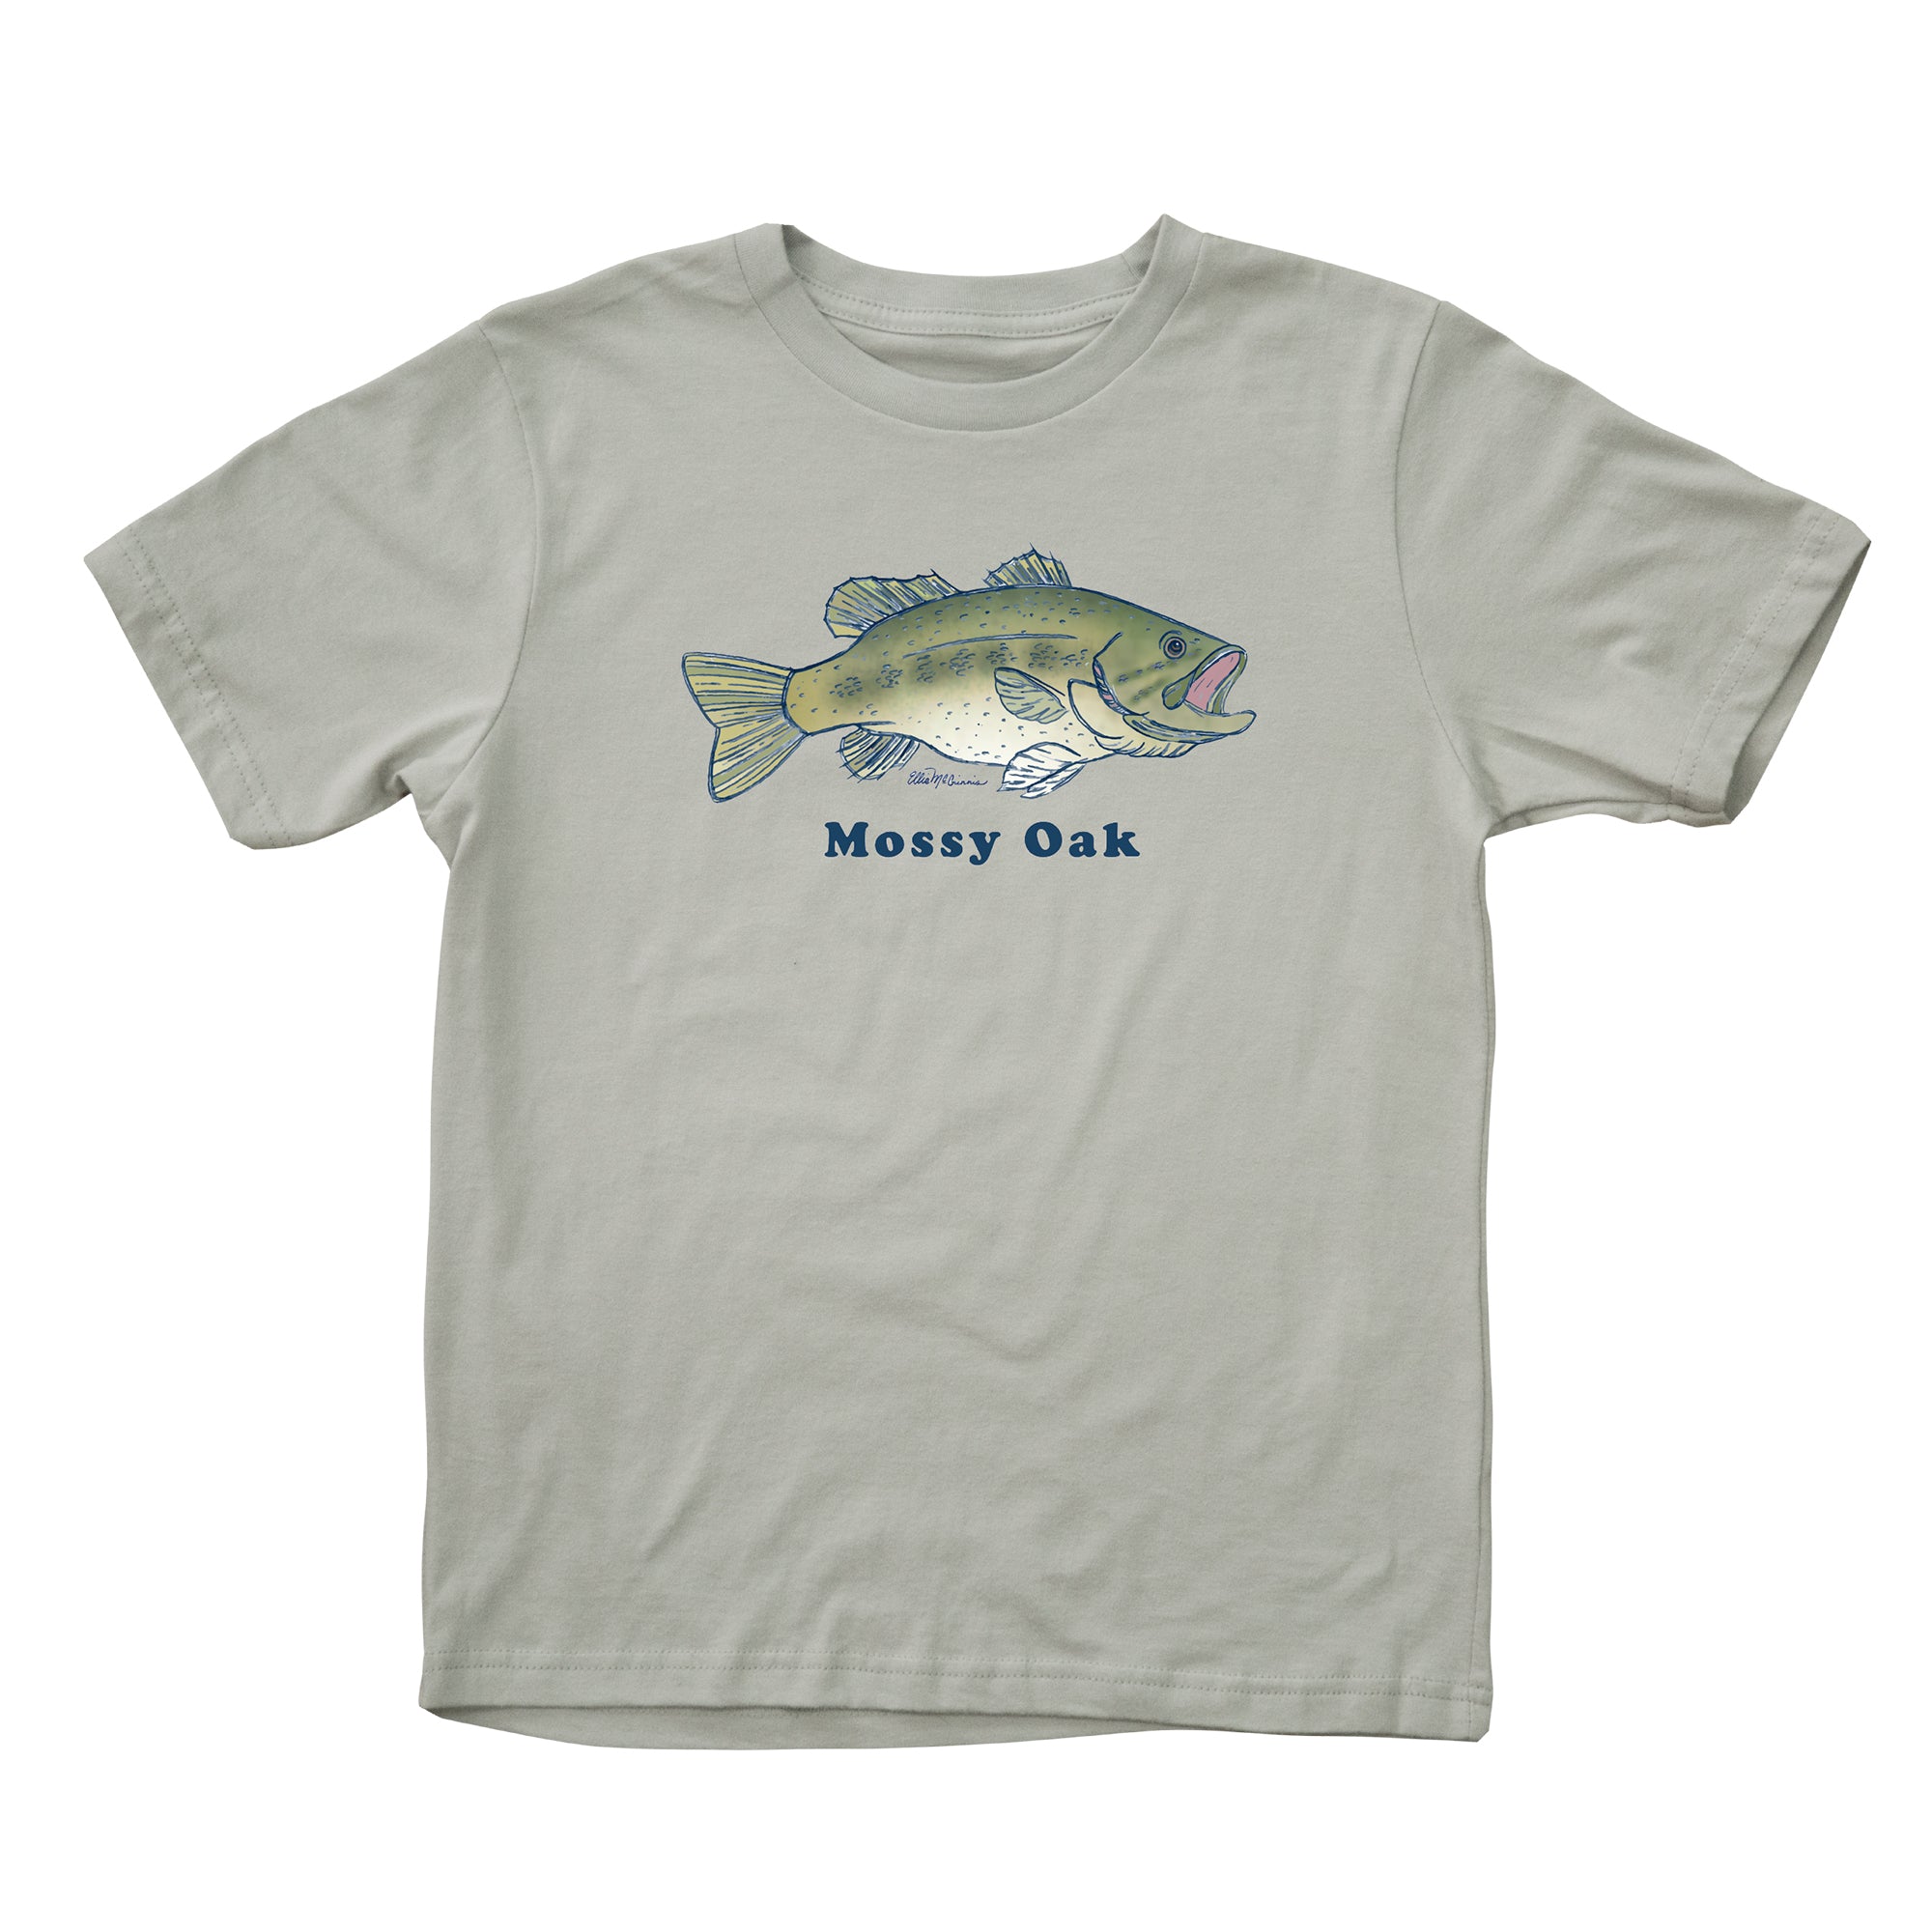 Bass Fishing T Shirt, Fishing Shirt, Bass Fishing wear, Bass Tee